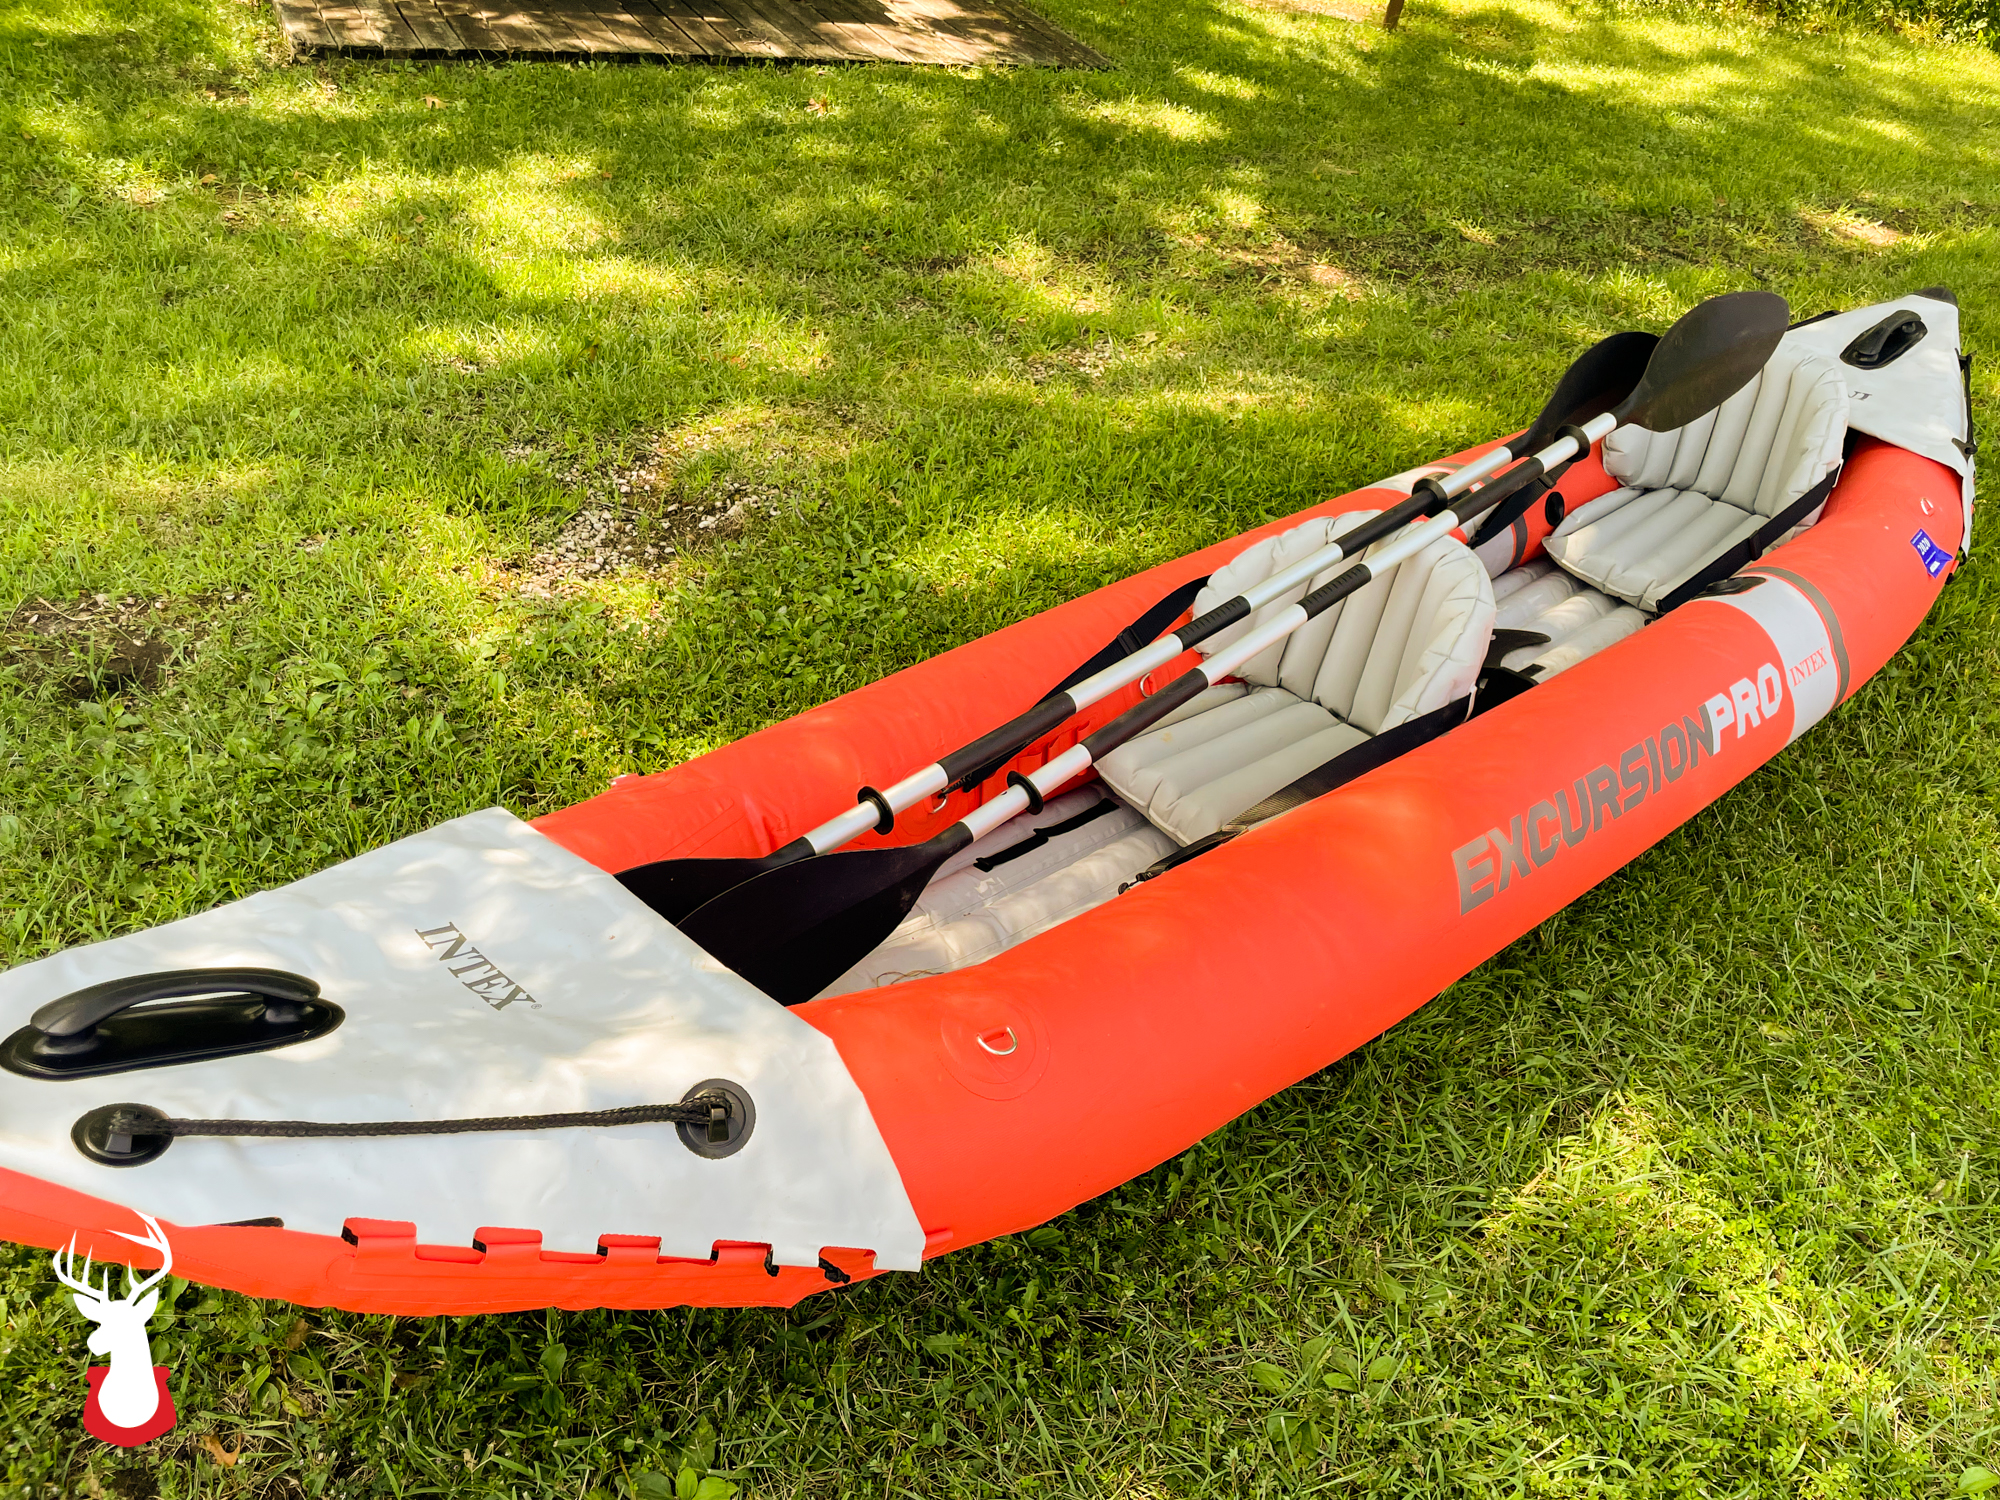 Intex Excursion Pro Kayak 